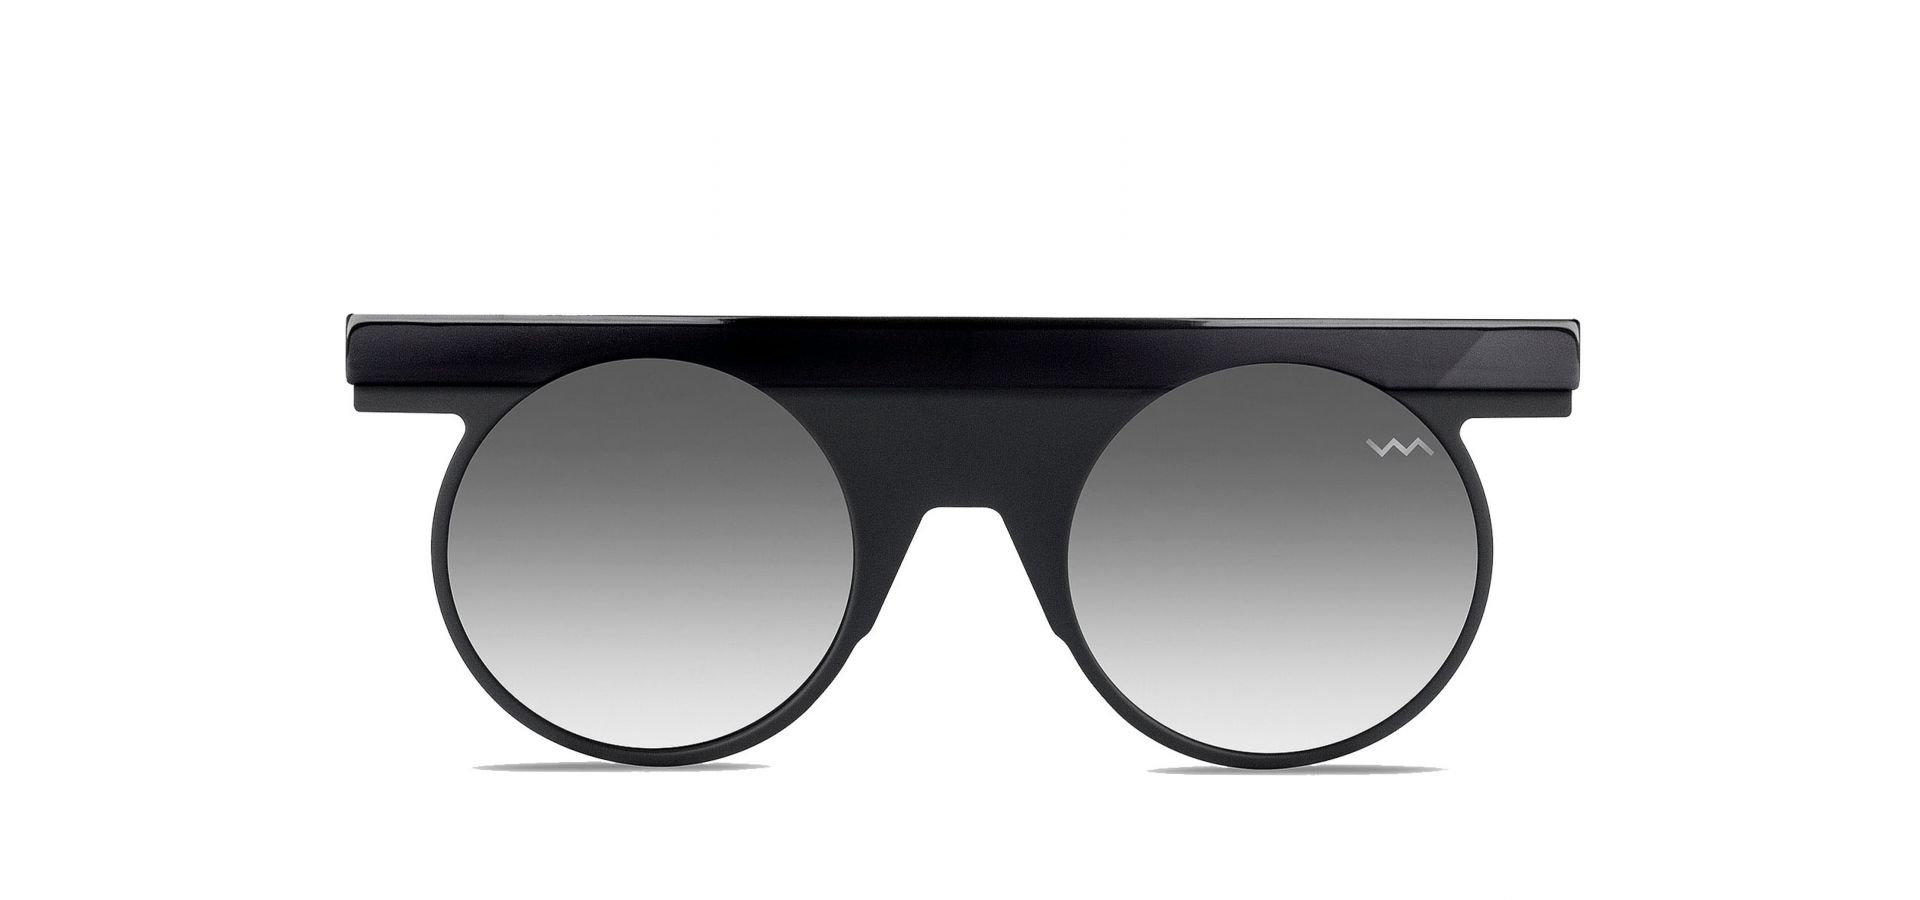 Sončna očala VAVA BL0014 BLACK SILVER: Velikost: 46/22/145, Spol: unisex, Material: acetat/kovinska